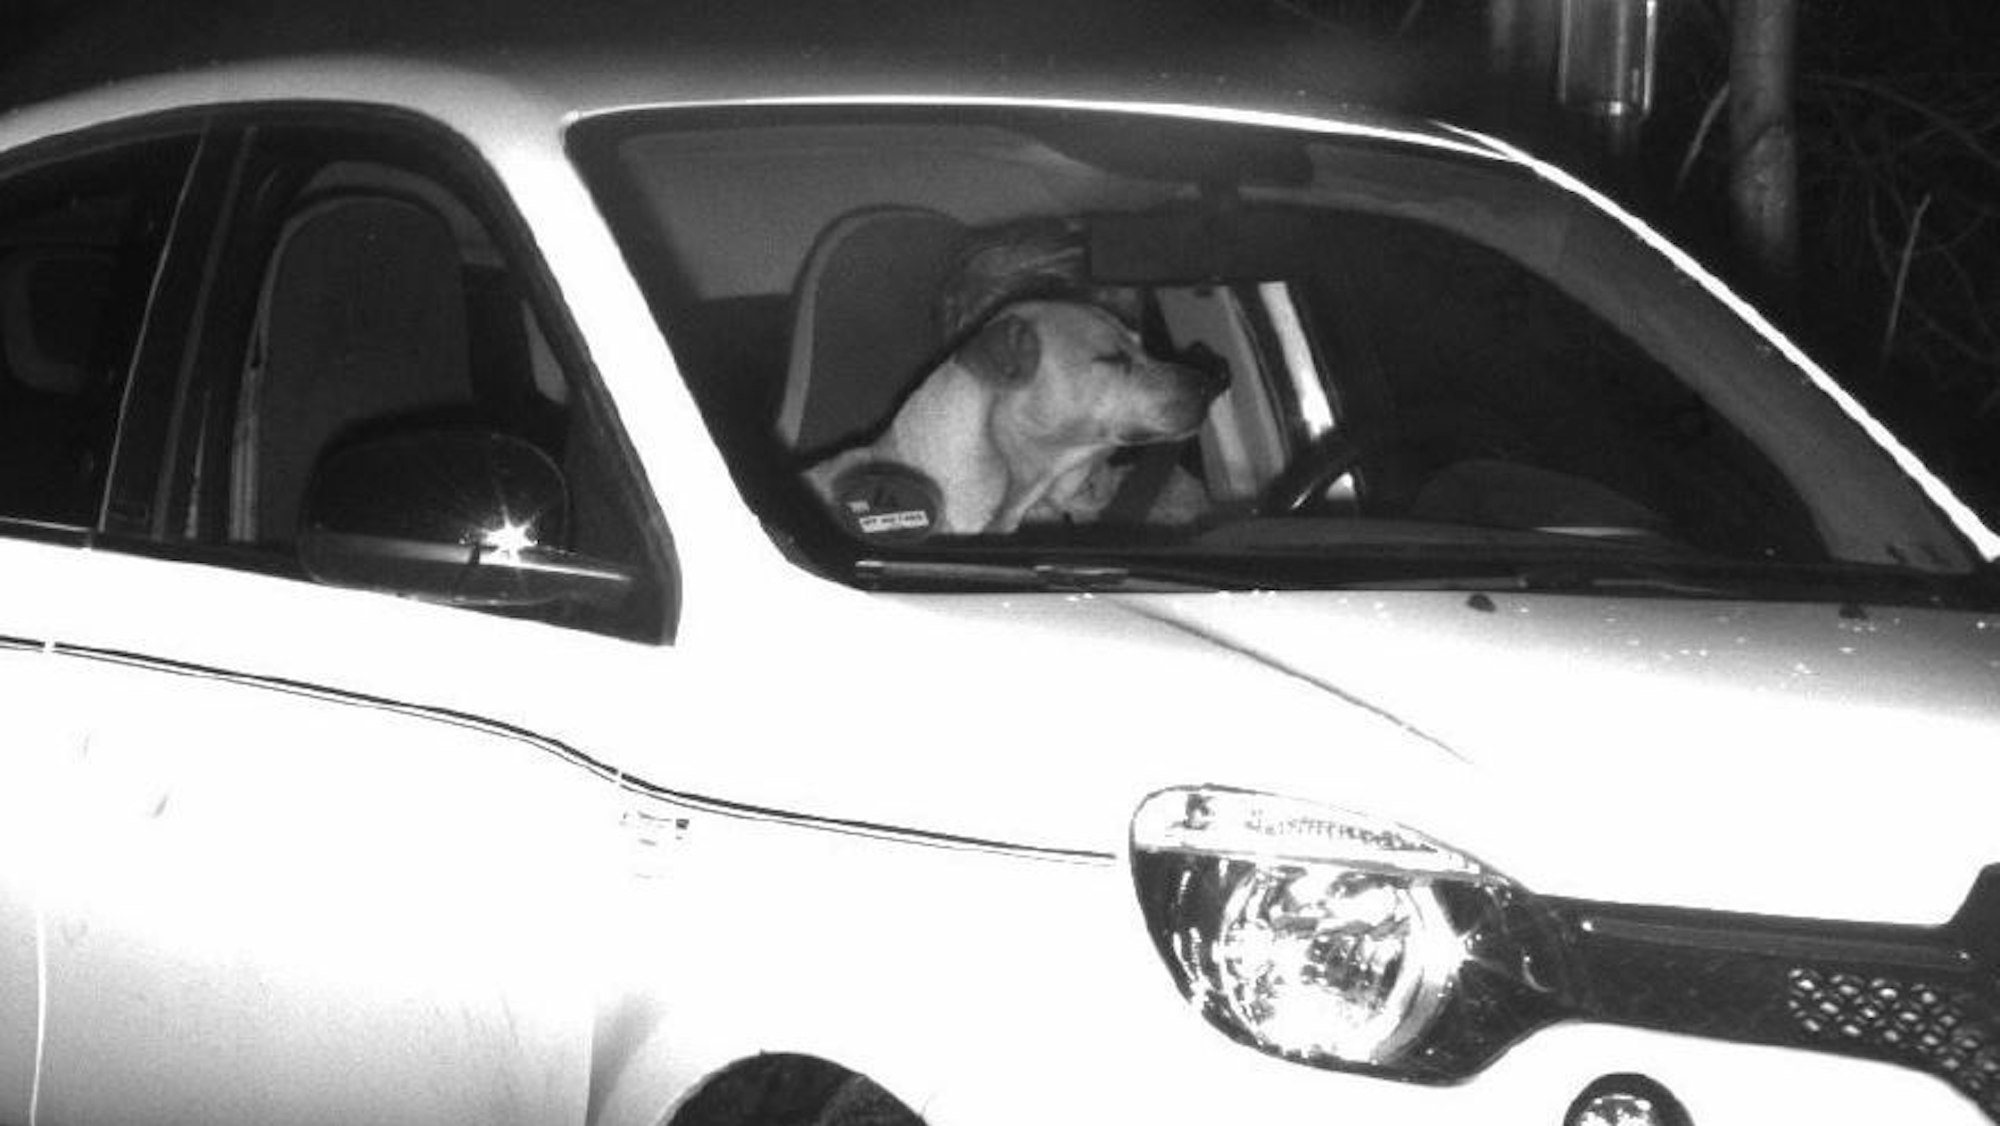 Blitzerfoto von einem Hund im Auto, der das Gesicht des Fahrers in Bonn verdeckt.